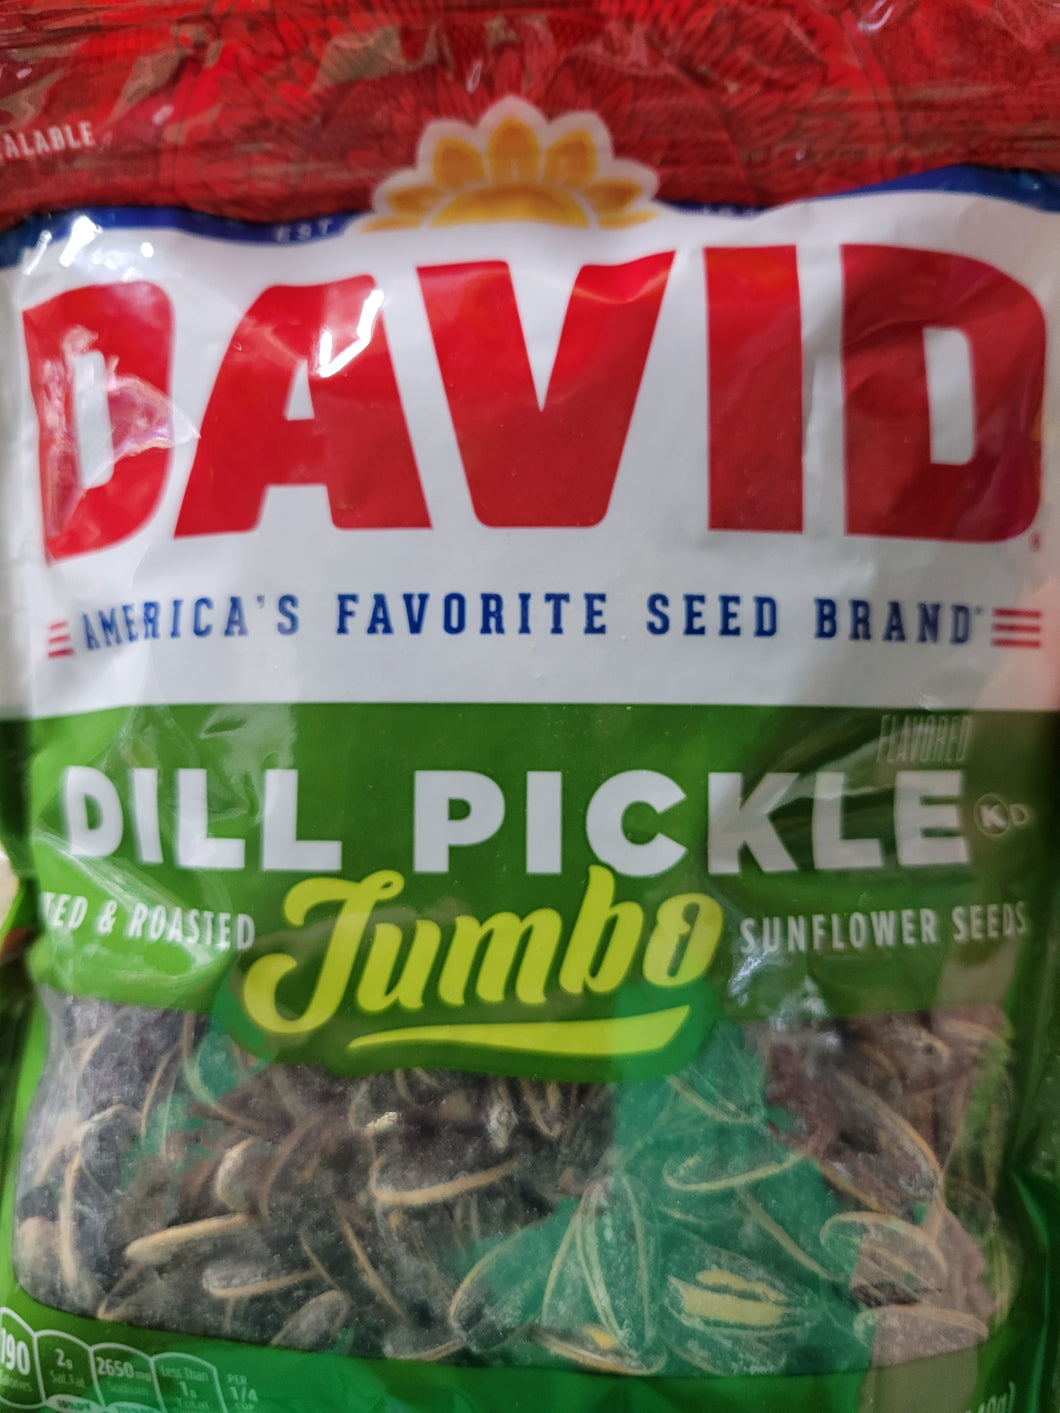 Davids Dill Pickle Sunflower Seeds